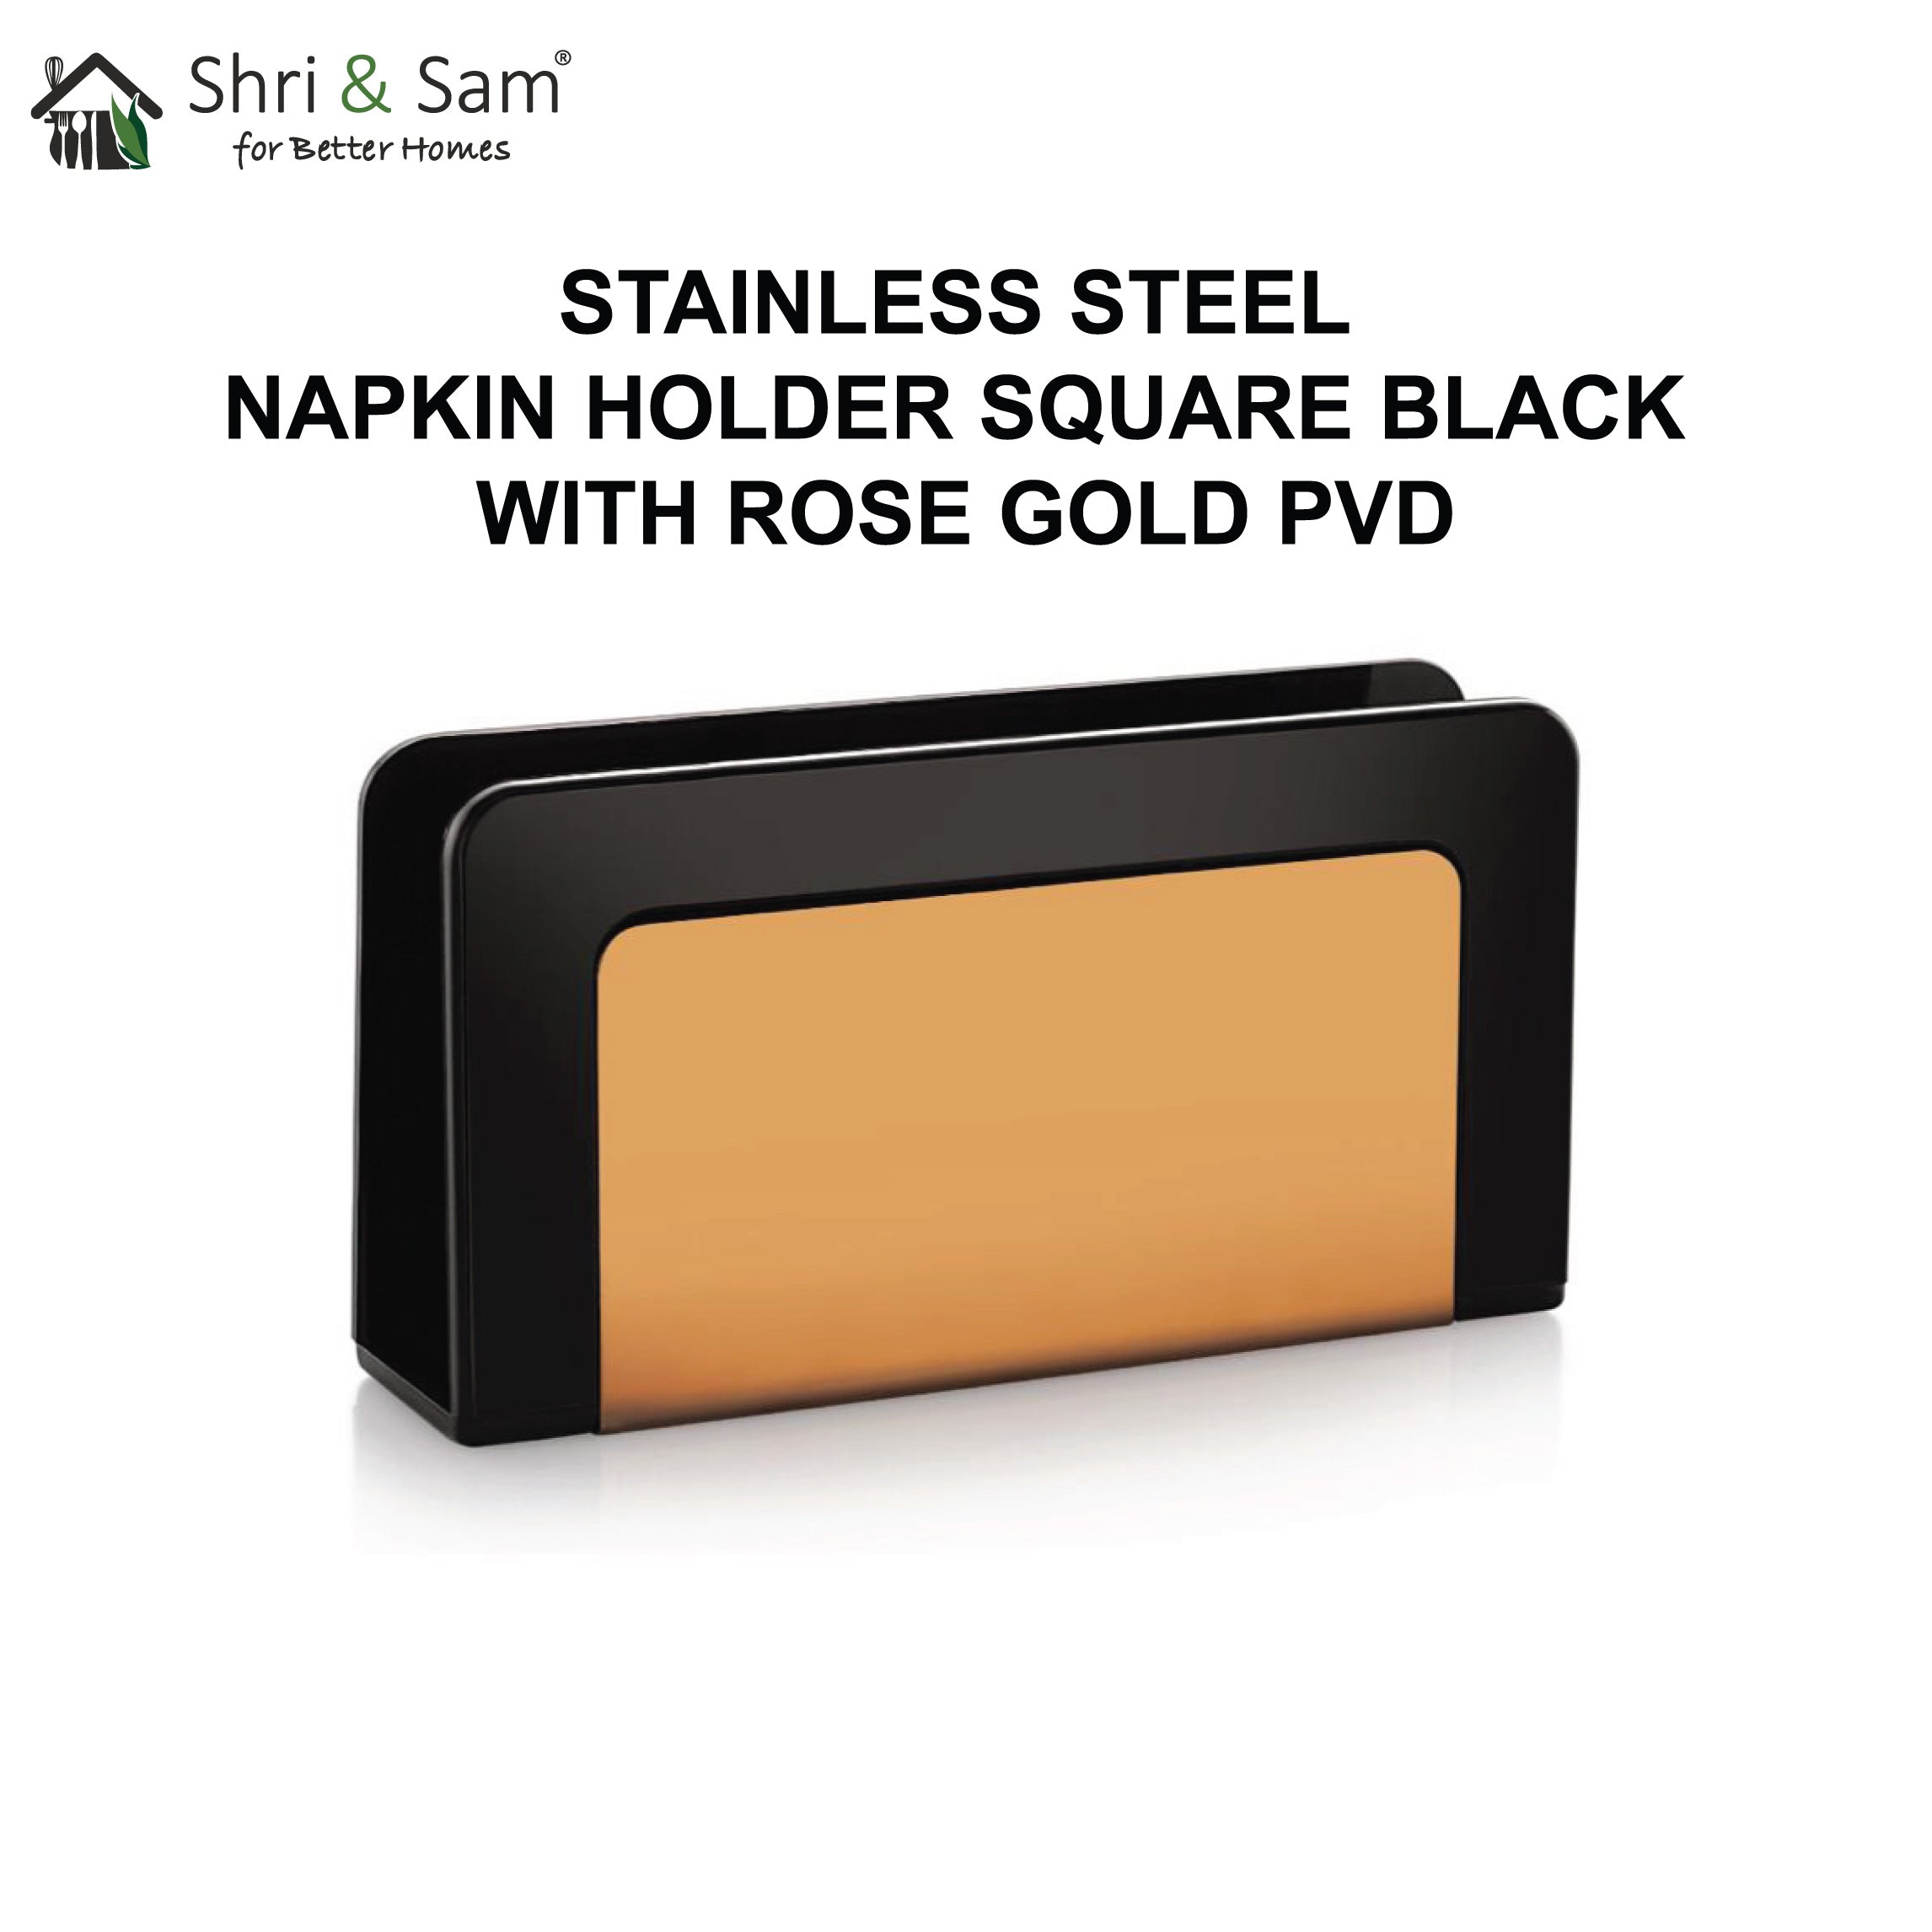 Stainless Steel Square Black Napkin Holder